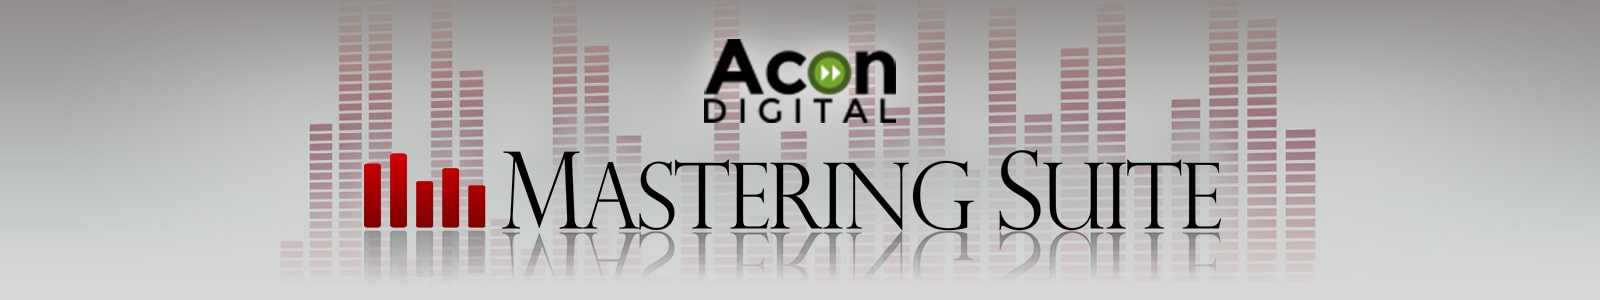 mastering suite by acon digital